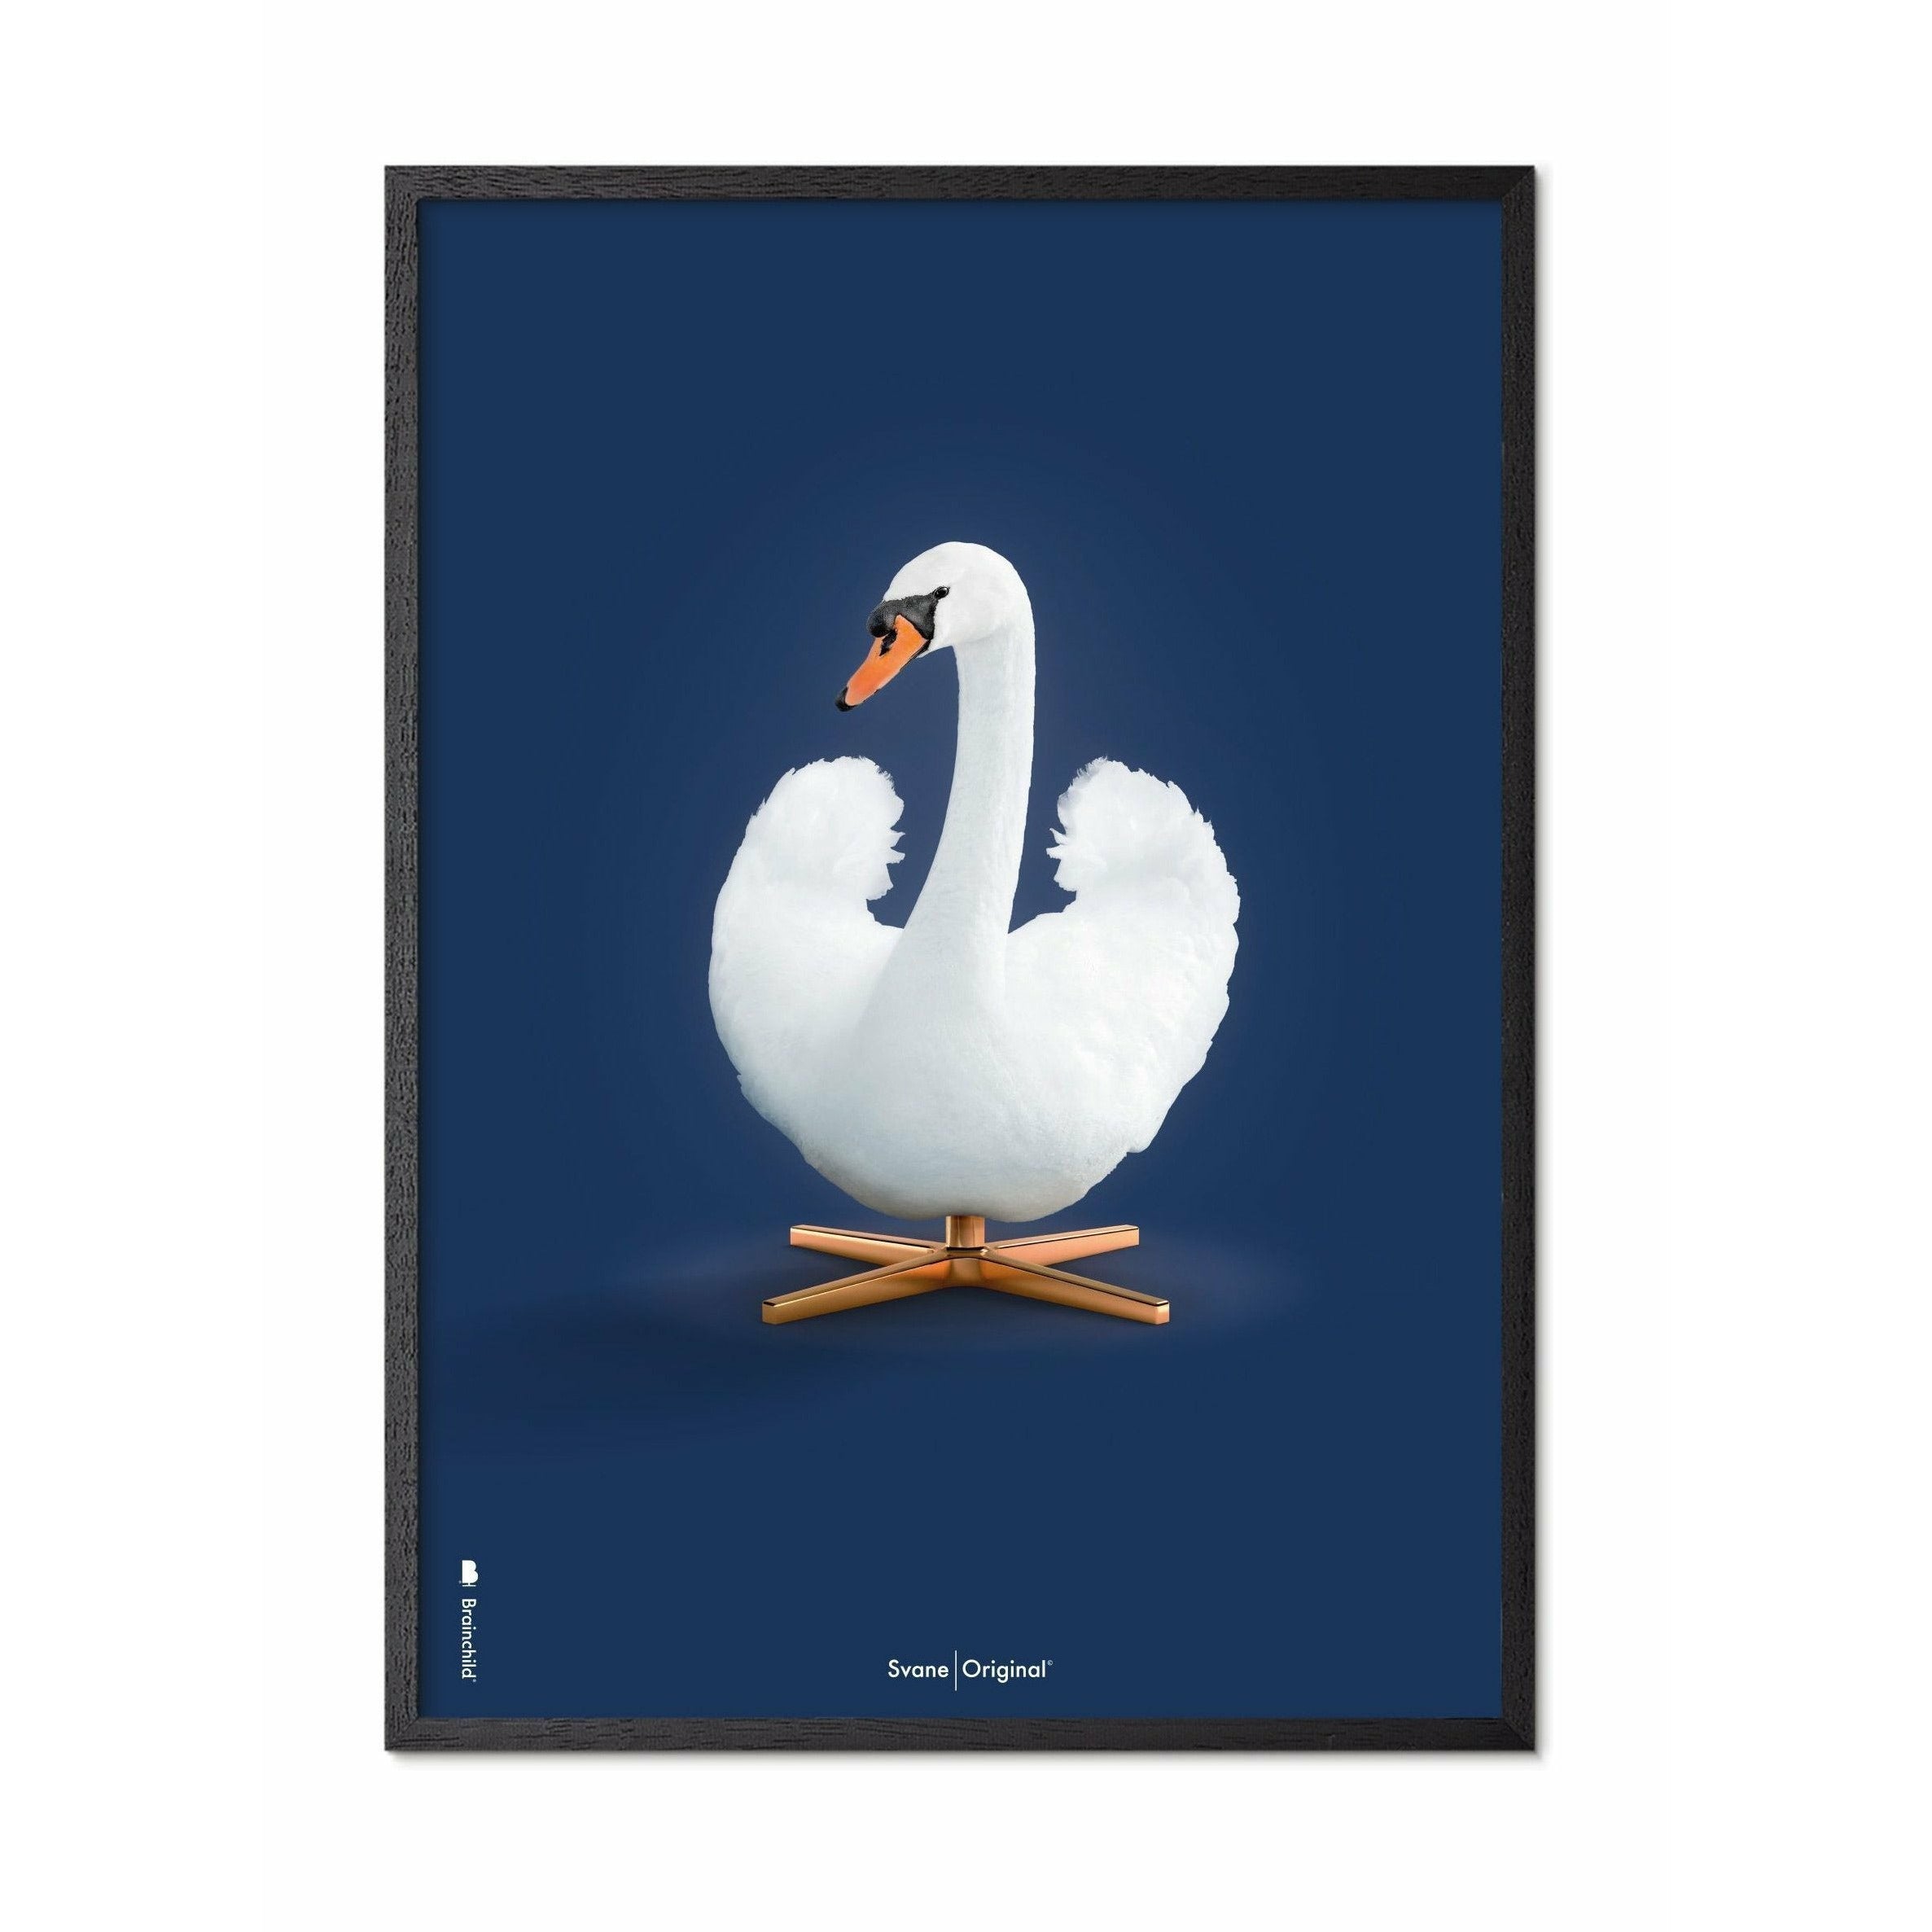 Póster clásico de Swan Swan, marco en madera lacada negra de 70 x100 cm, fondo azul oscuro